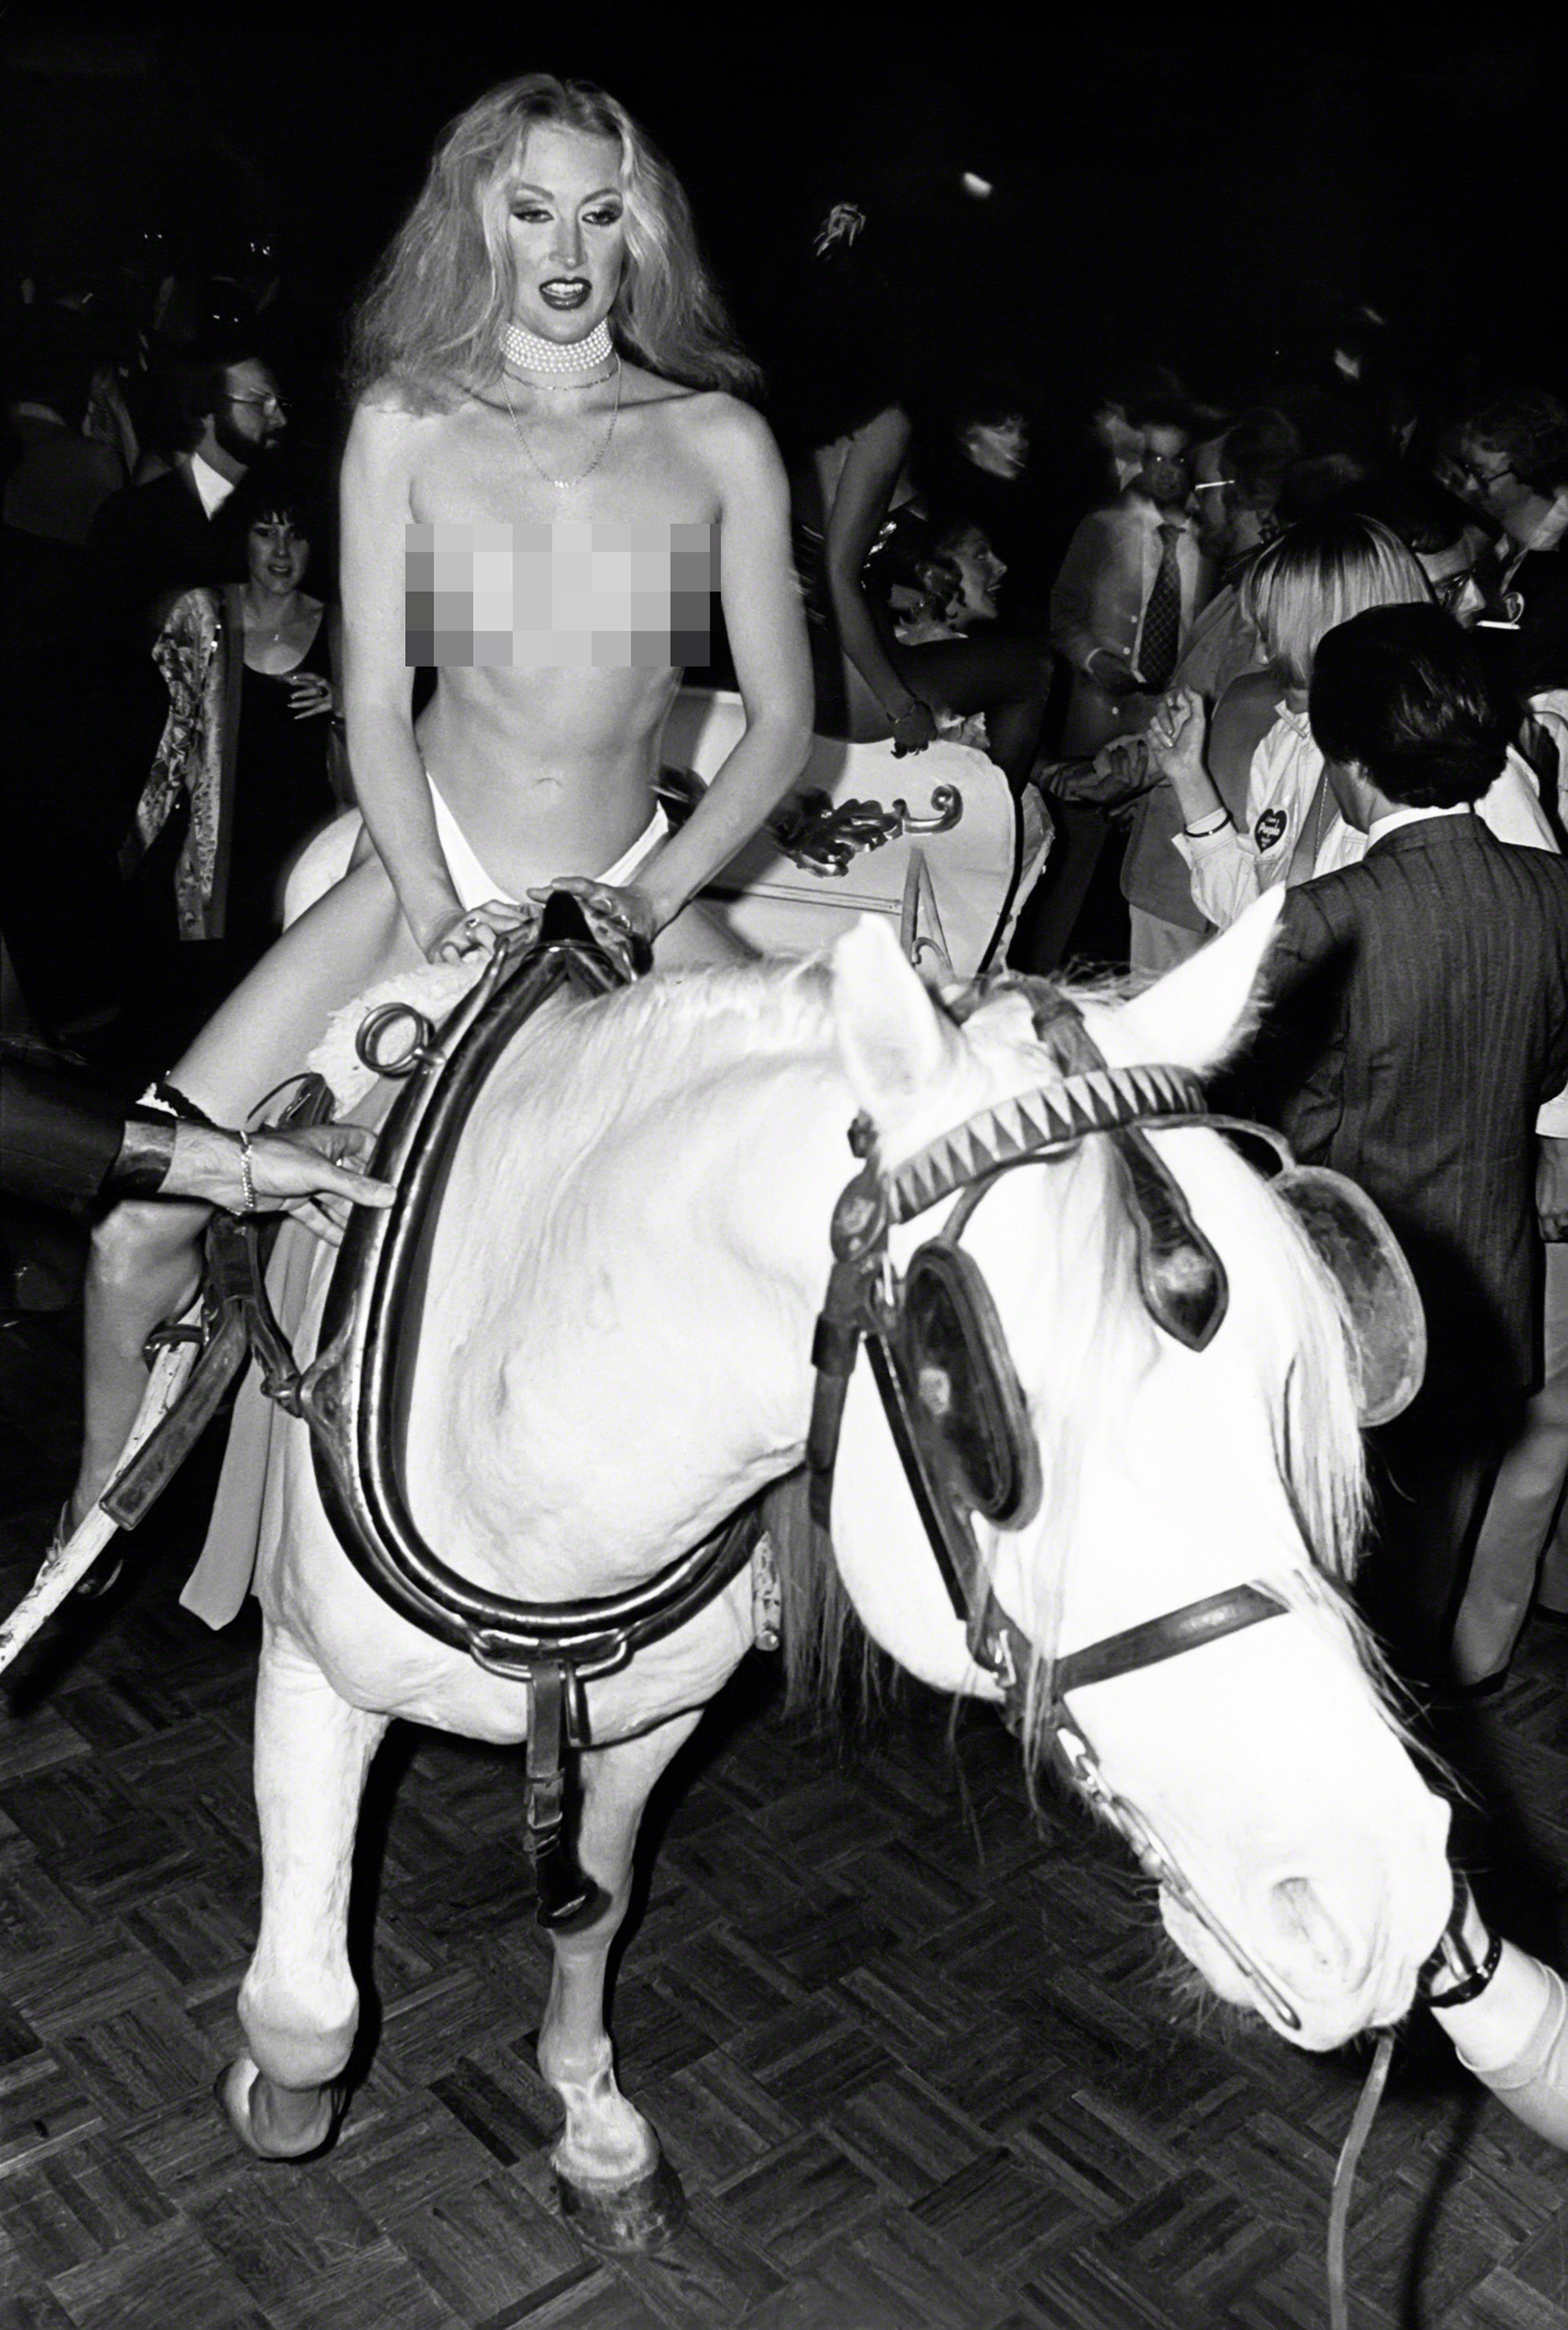 Una chica pasea desnuda por la pista en una de las veladas de 1978. Cada noche podía suceder cualquiera cosa en Studio 54 (Foto: Sonia Moskowitz/IMAGES/Getty Images)
